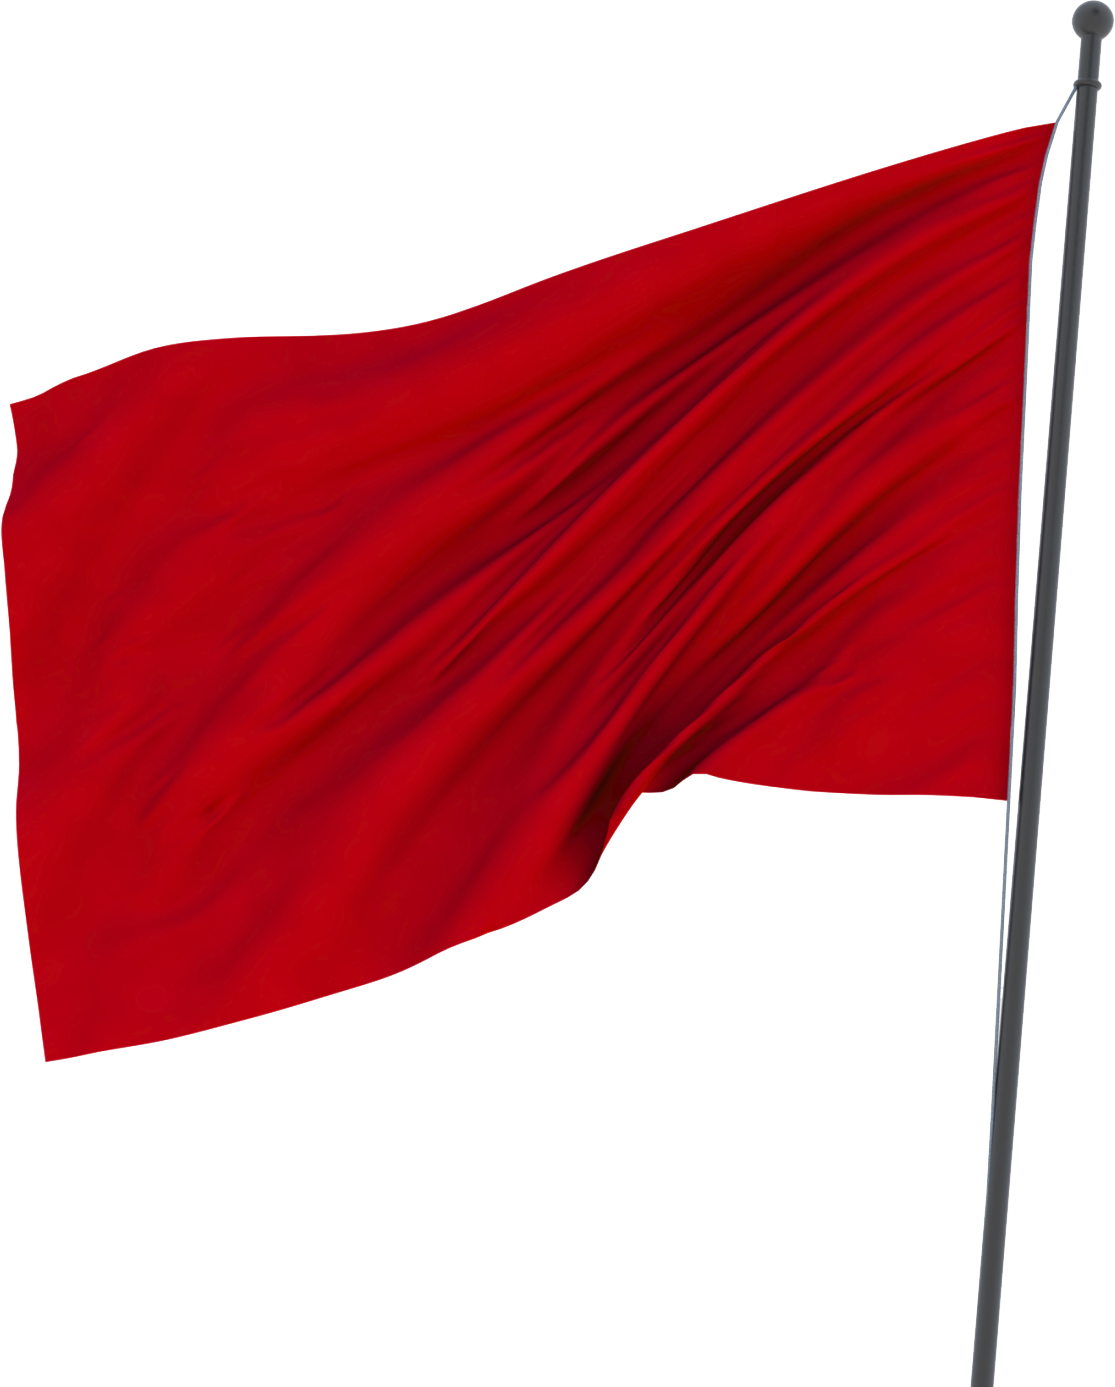 Bandiera rossa